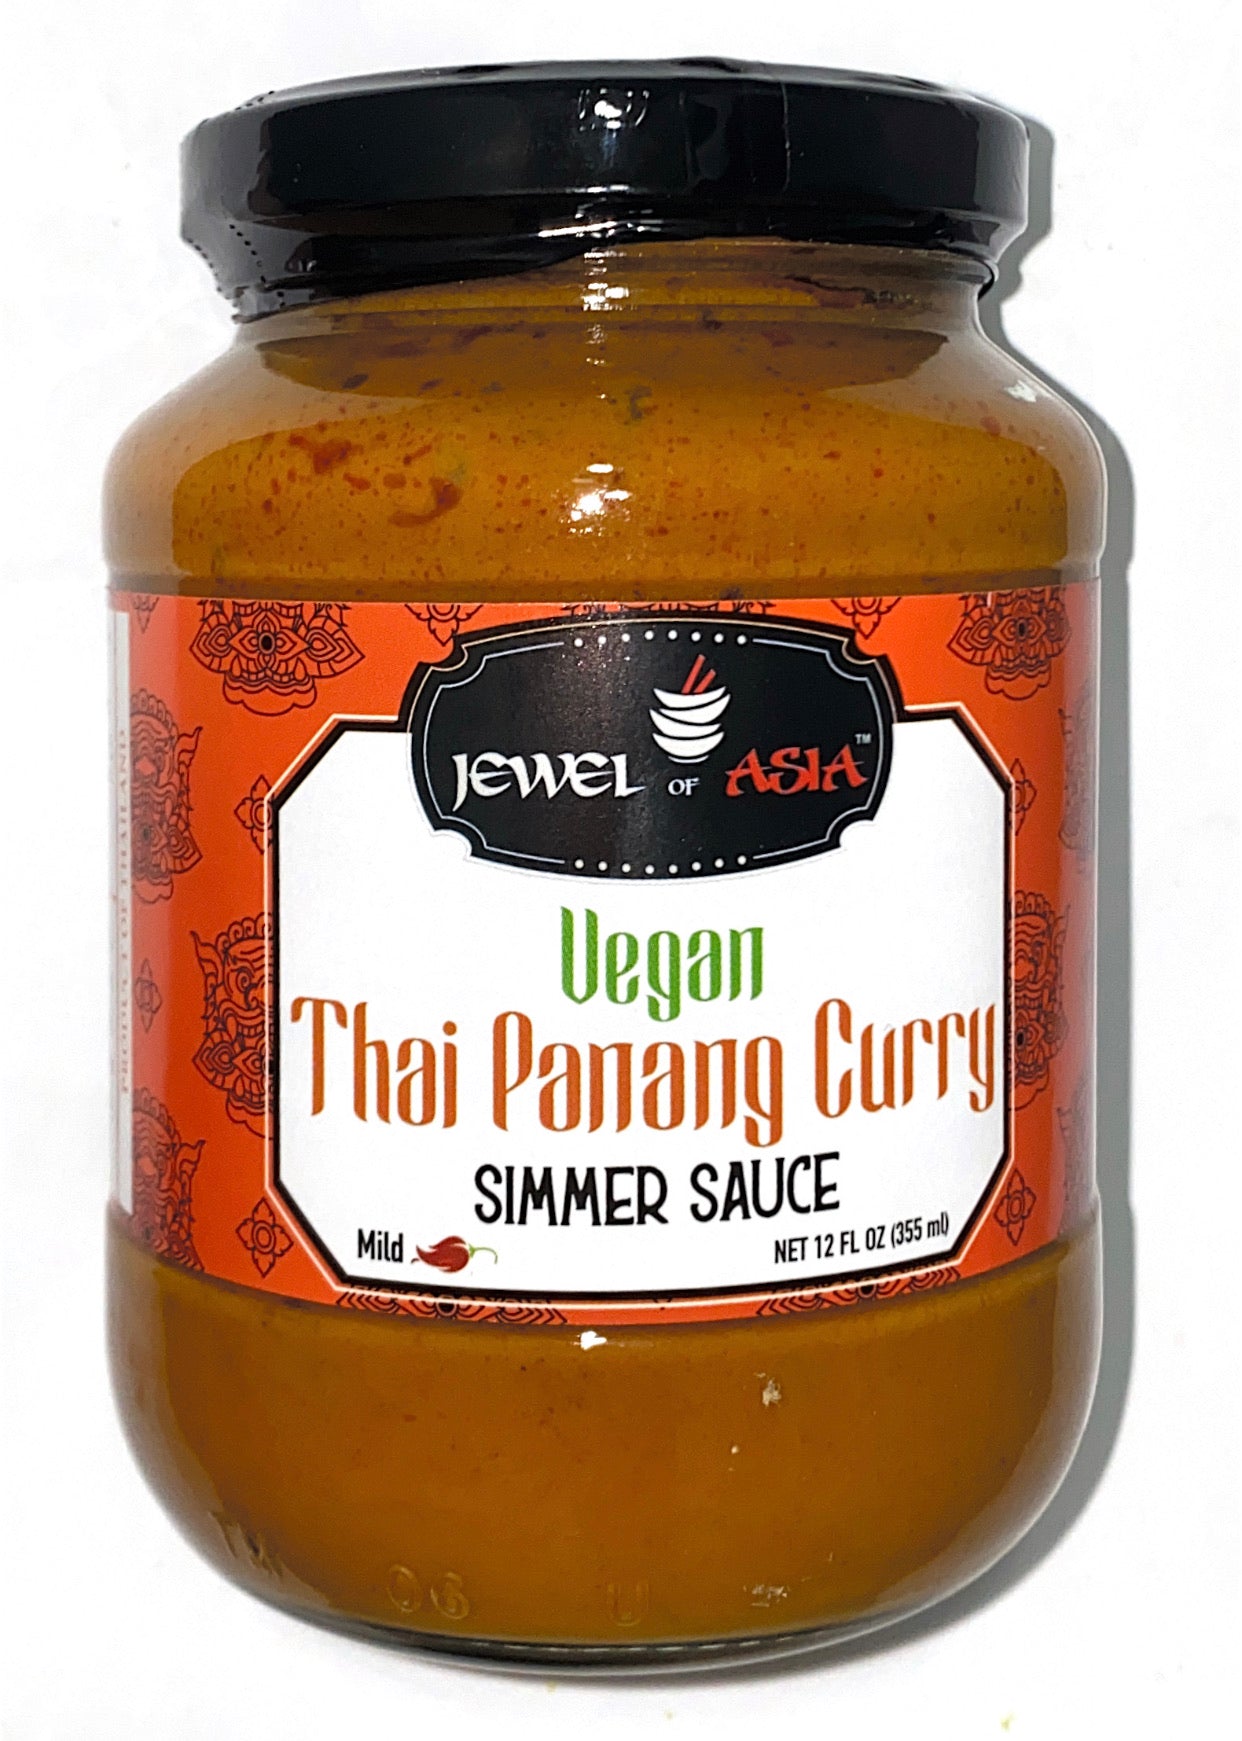 Vegan Thai Panang Curry